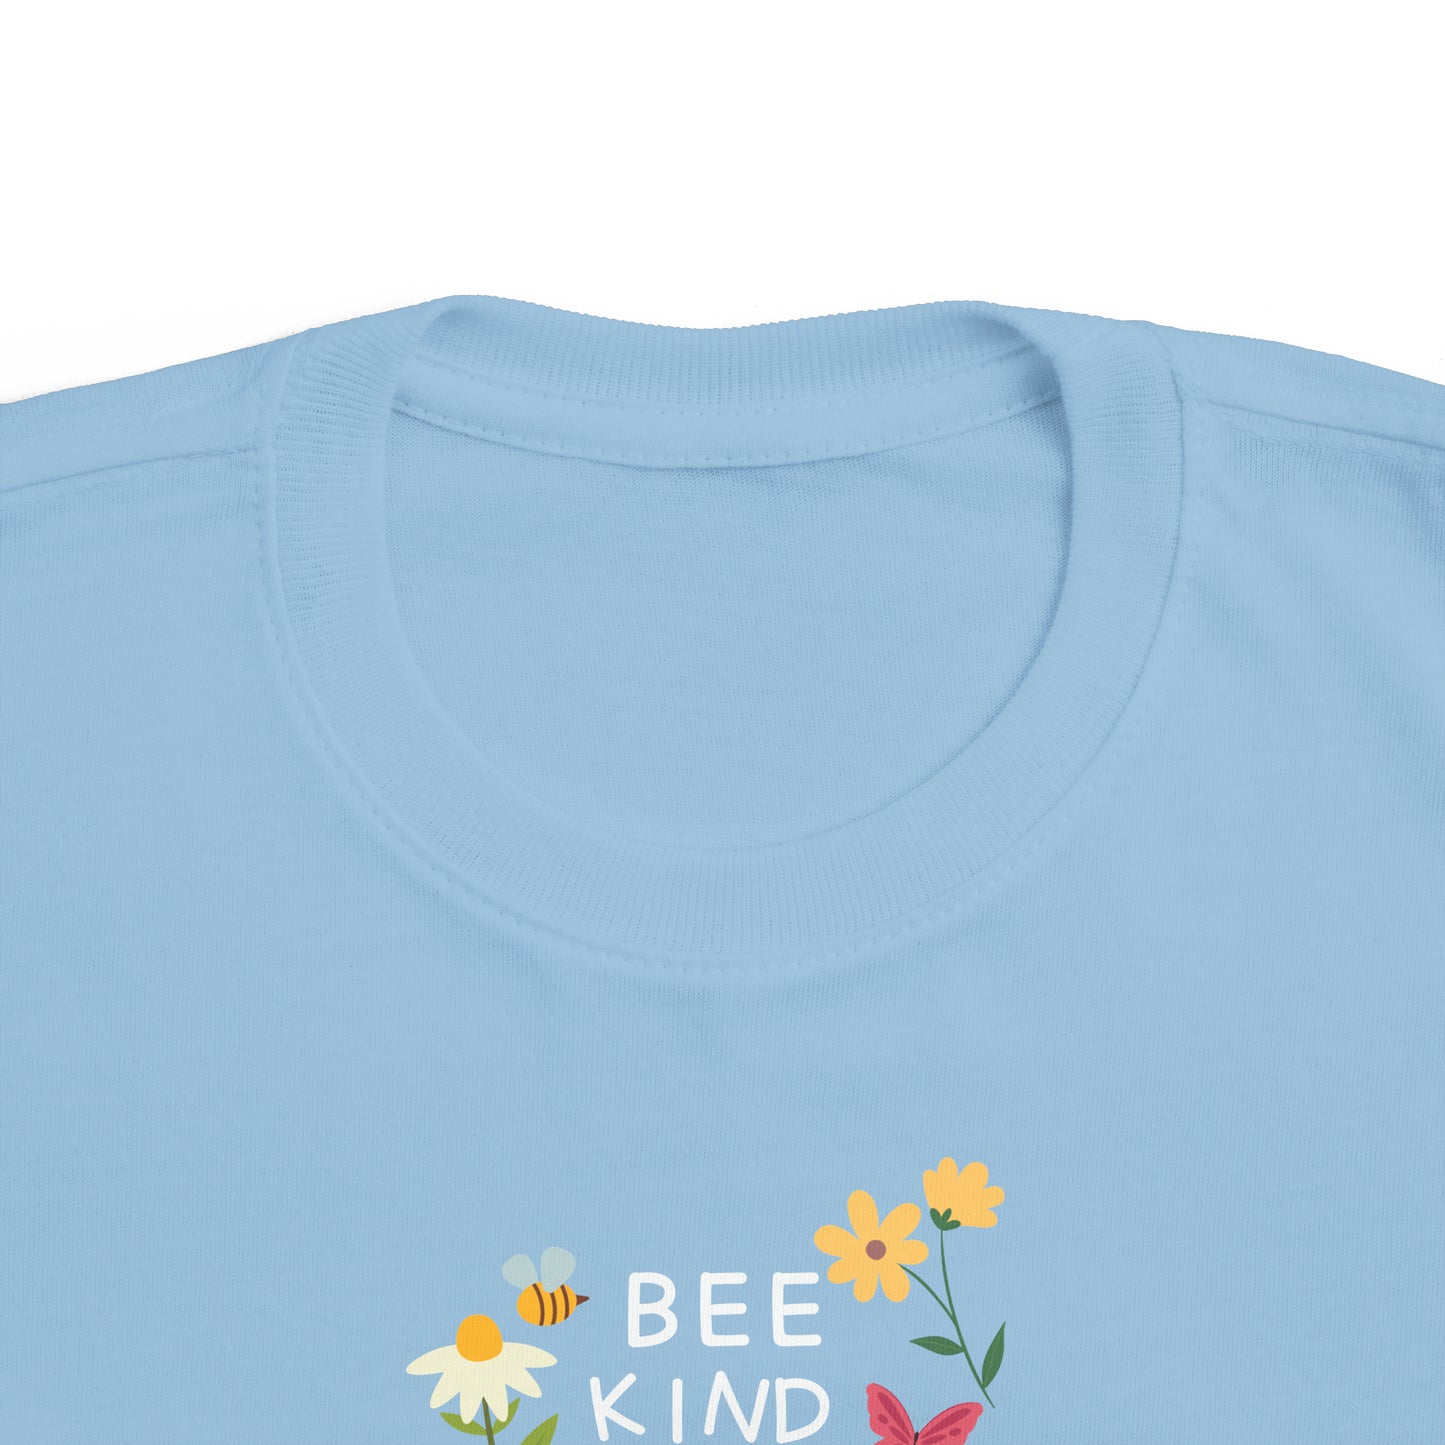 T-shirt à manches courtes à imprimé unisexe be kind to ALL KIND pour toddler